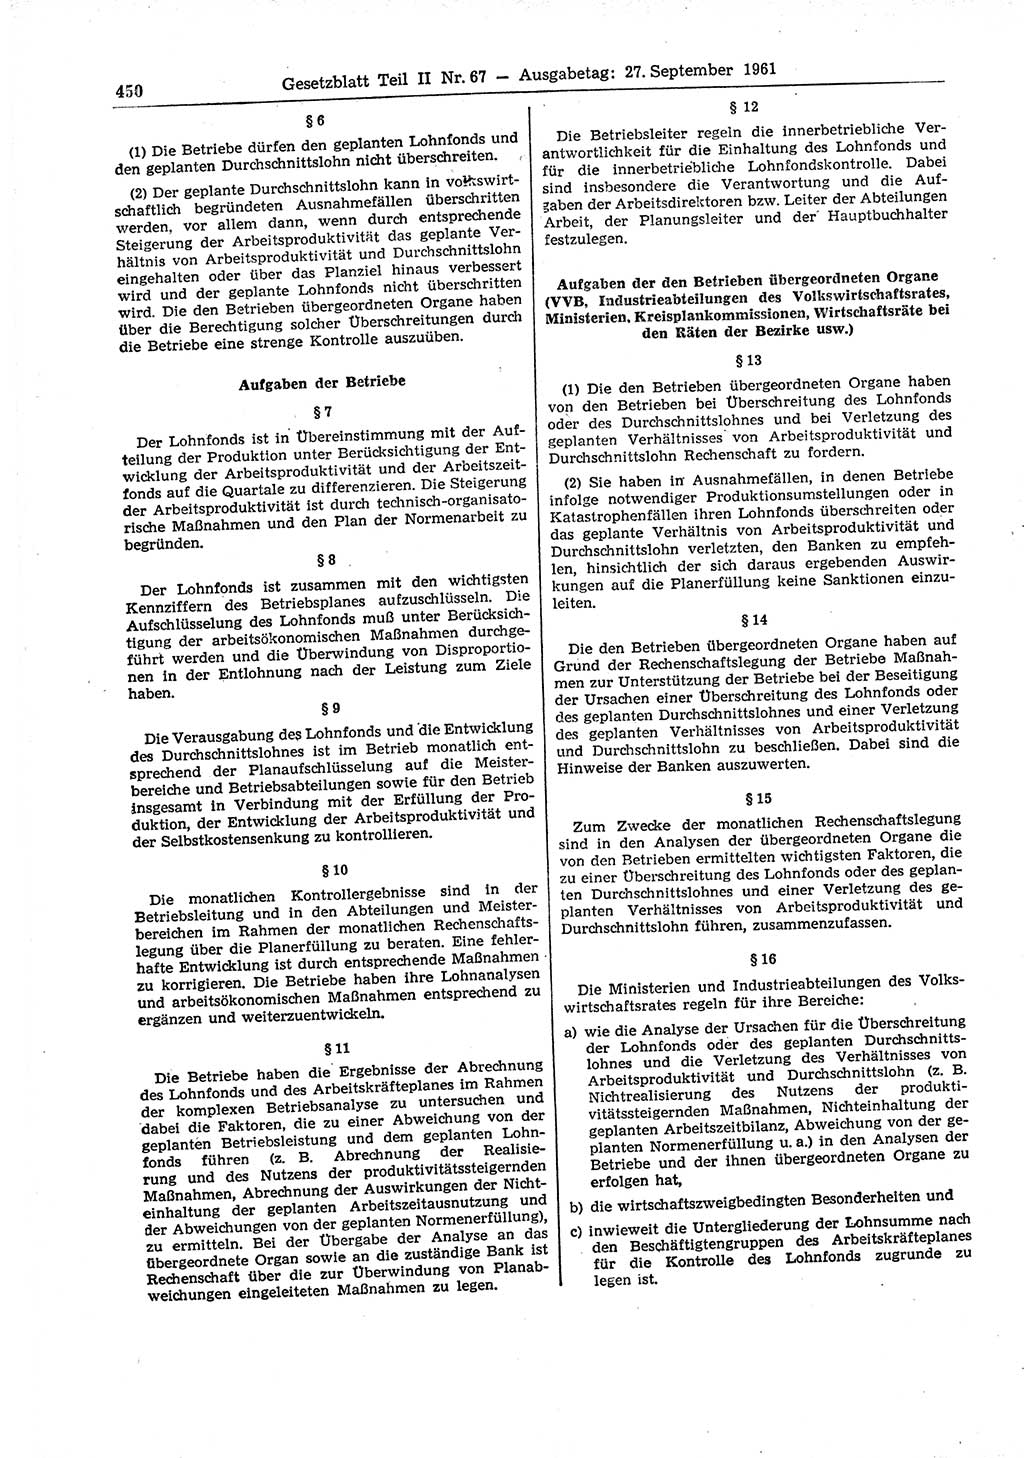 Gesetzblatt (GBl.) der Deutschen Demokratischen Republik (DDR) Teil ⅠⅠ 1961, Seite 450 (GBl. DDR ⅠⅠ 1961, S. 450)